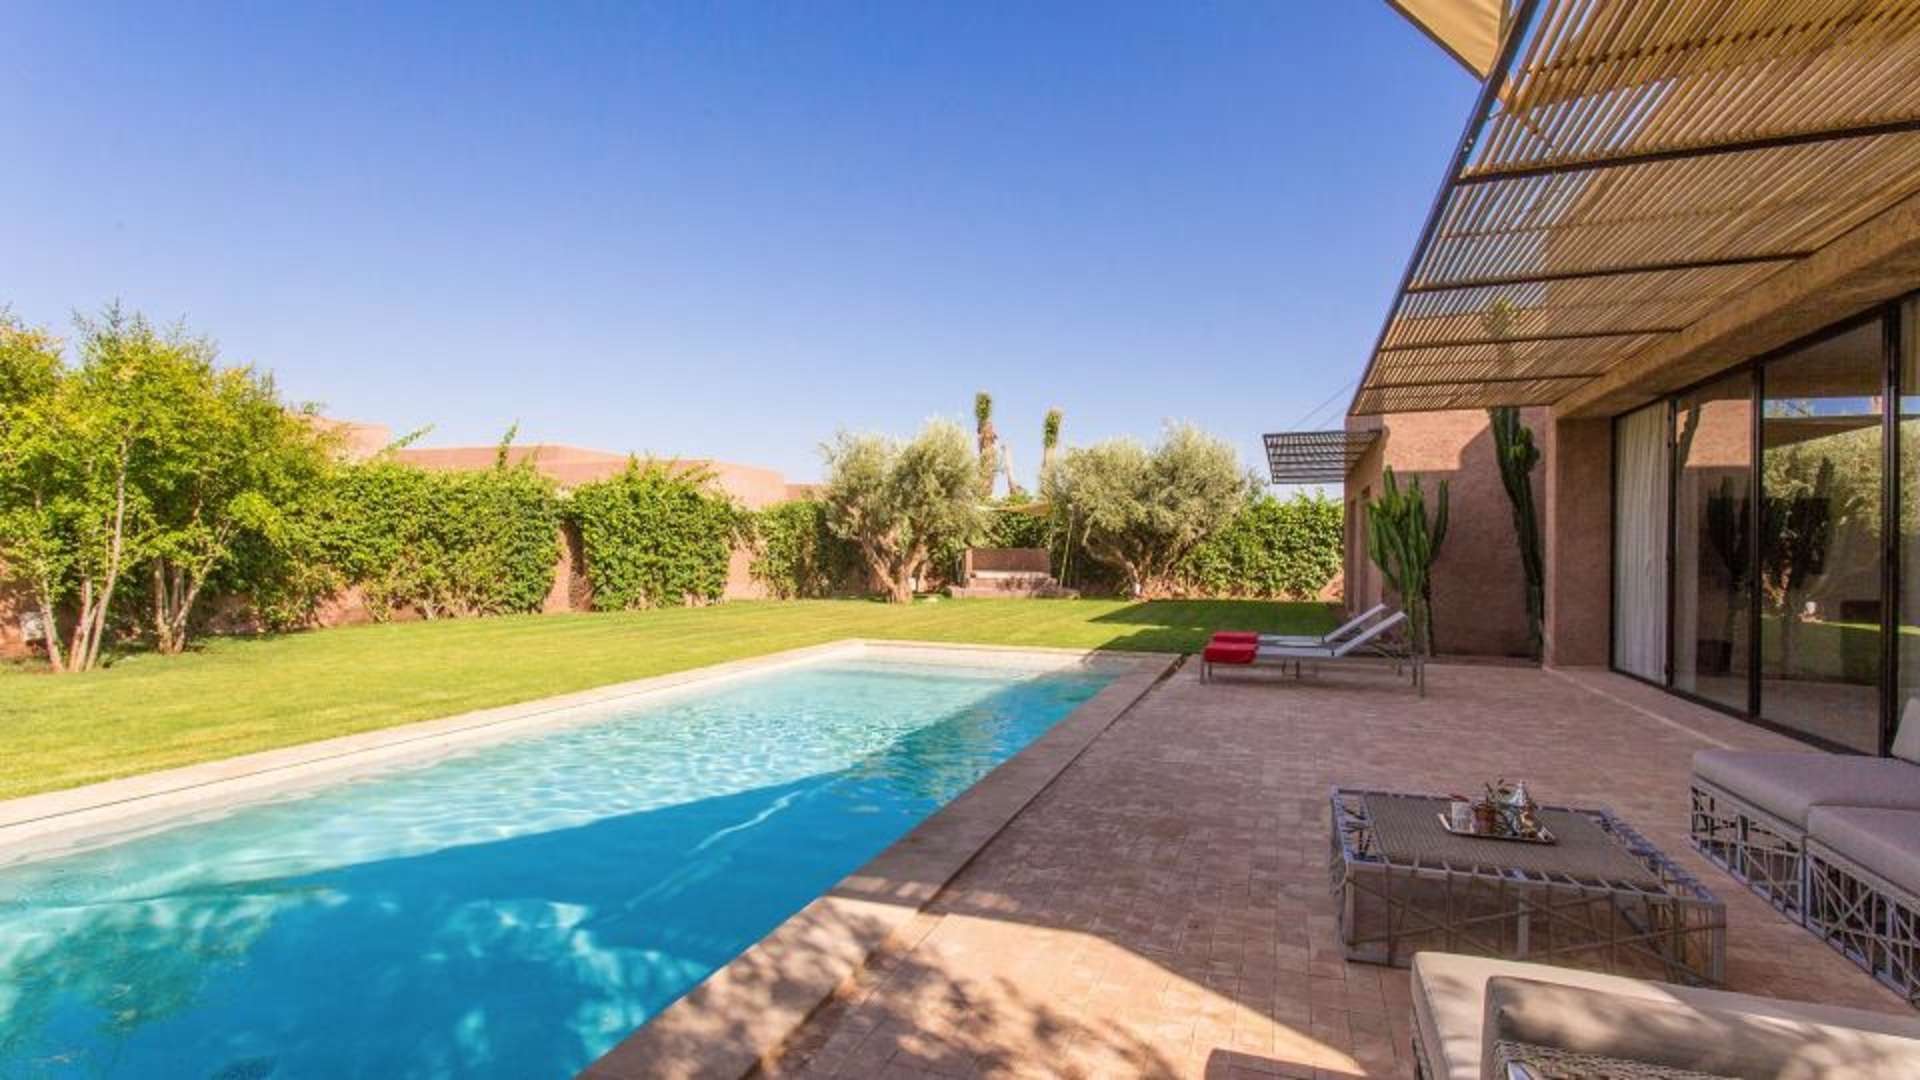 Location de vacances,Villa,Villa de luxe d’architecte de plain-pied pour 6 personnes. Domaine privé sécurisé avec services,Marrakech,Golf Royal Palm